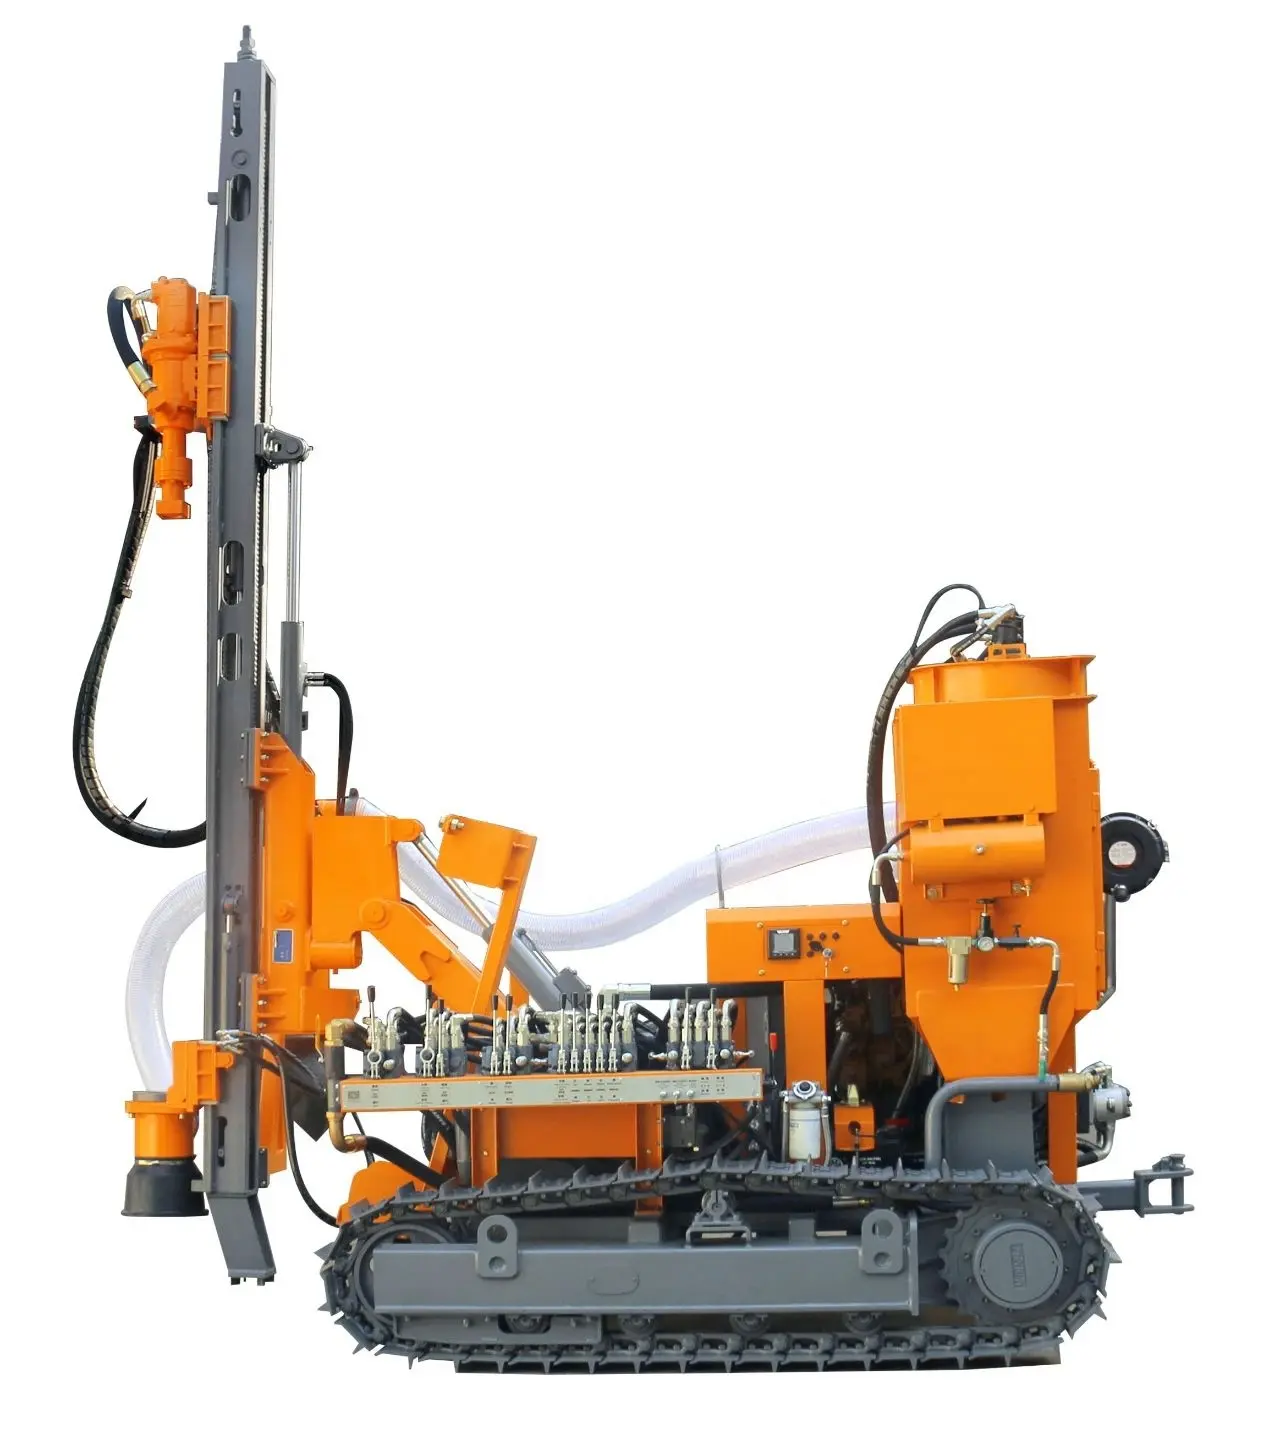 آلة حفر مطورة لتجميع الغبار والصخور والصخور بمحرك ديزل آلة حفر مثبتة على المسار ZGYX 412B-1